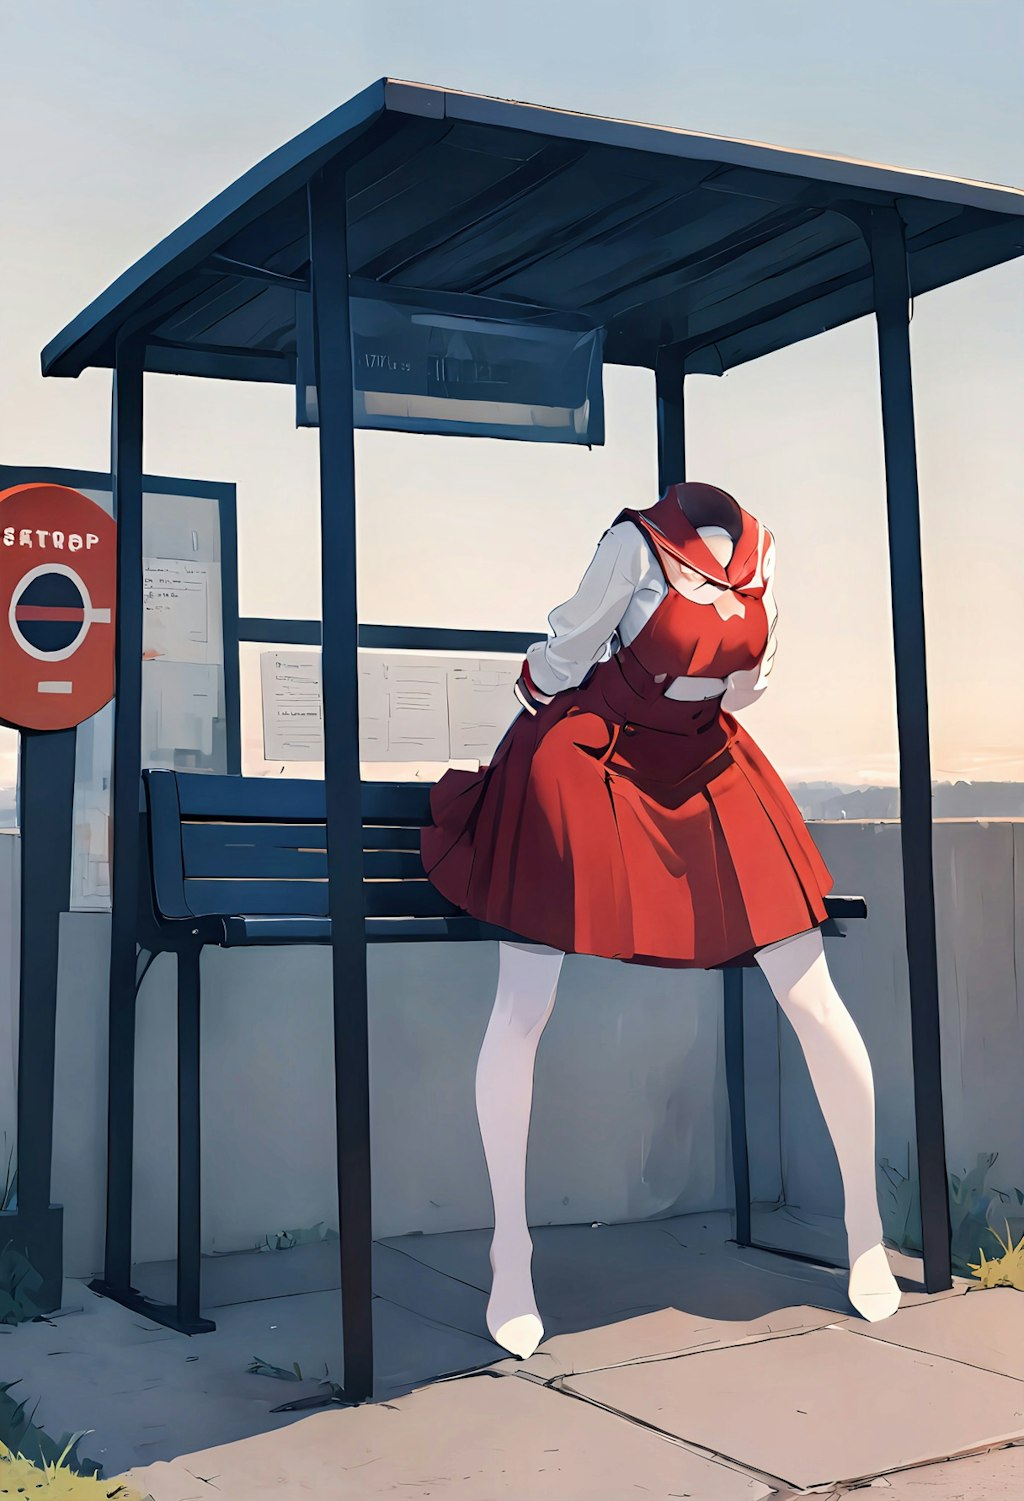 バス停で待つ女の子🤔